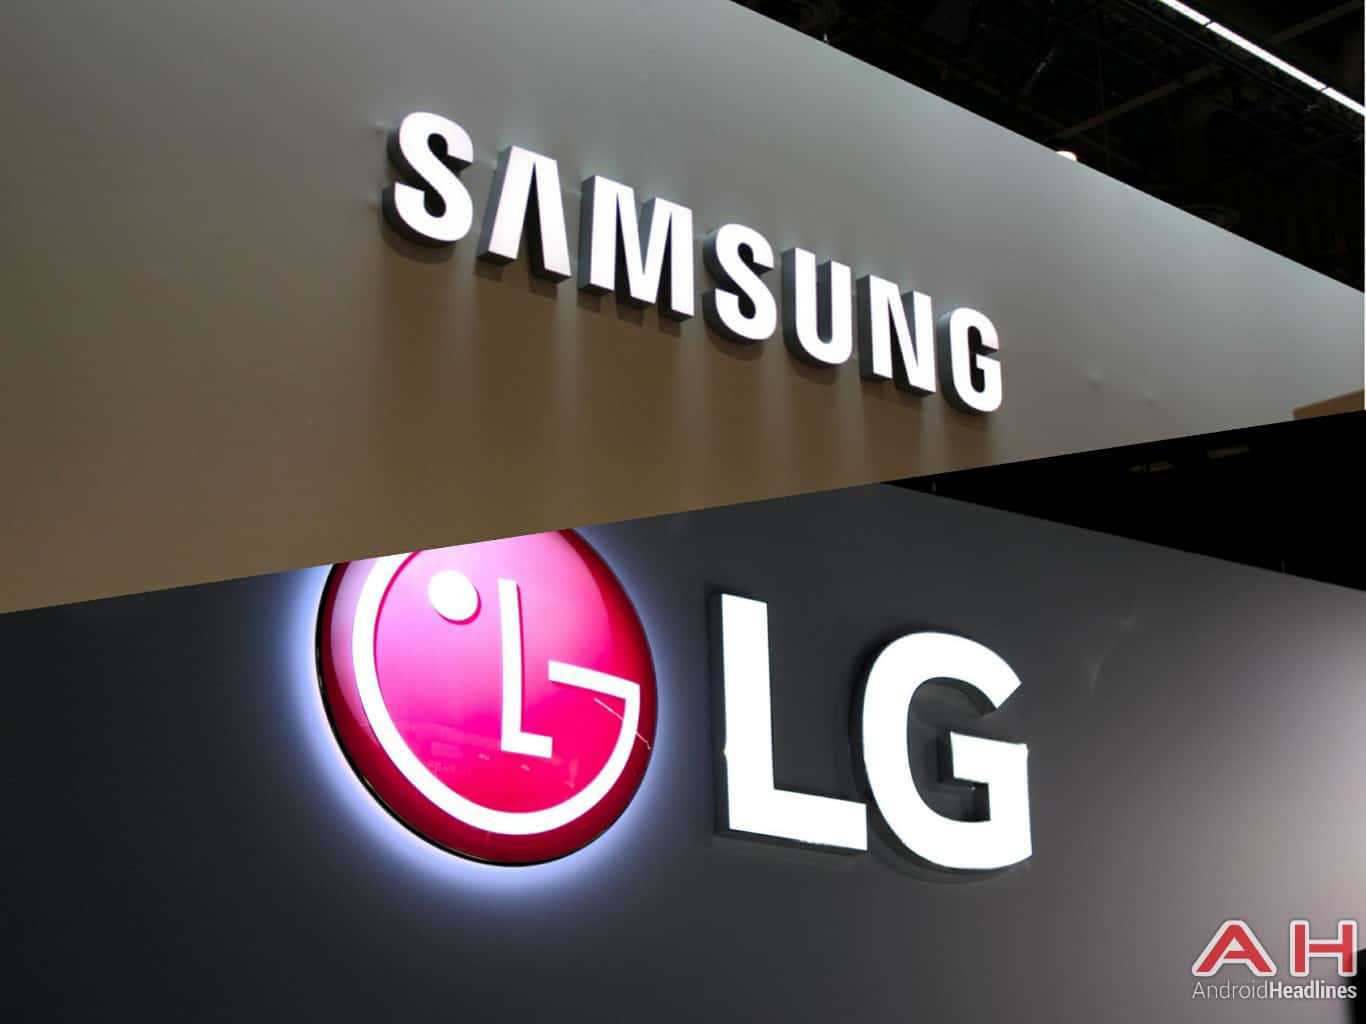 Samsung, LG Ranked Among World's Top 50 Innovators